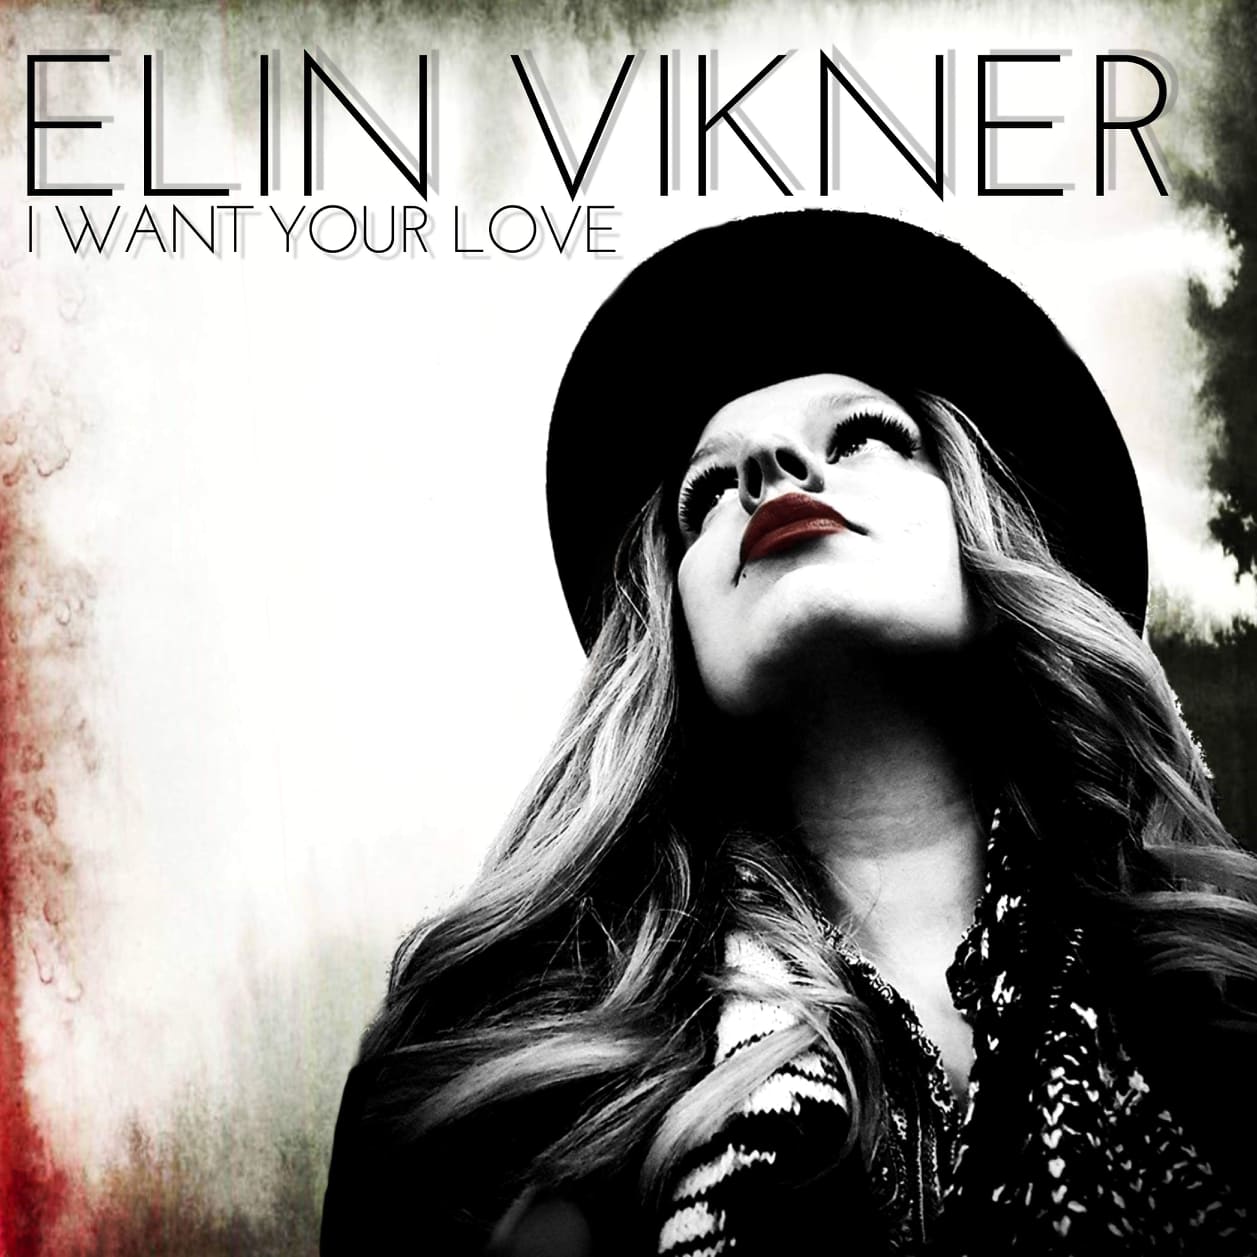 New single from Elin Vikner